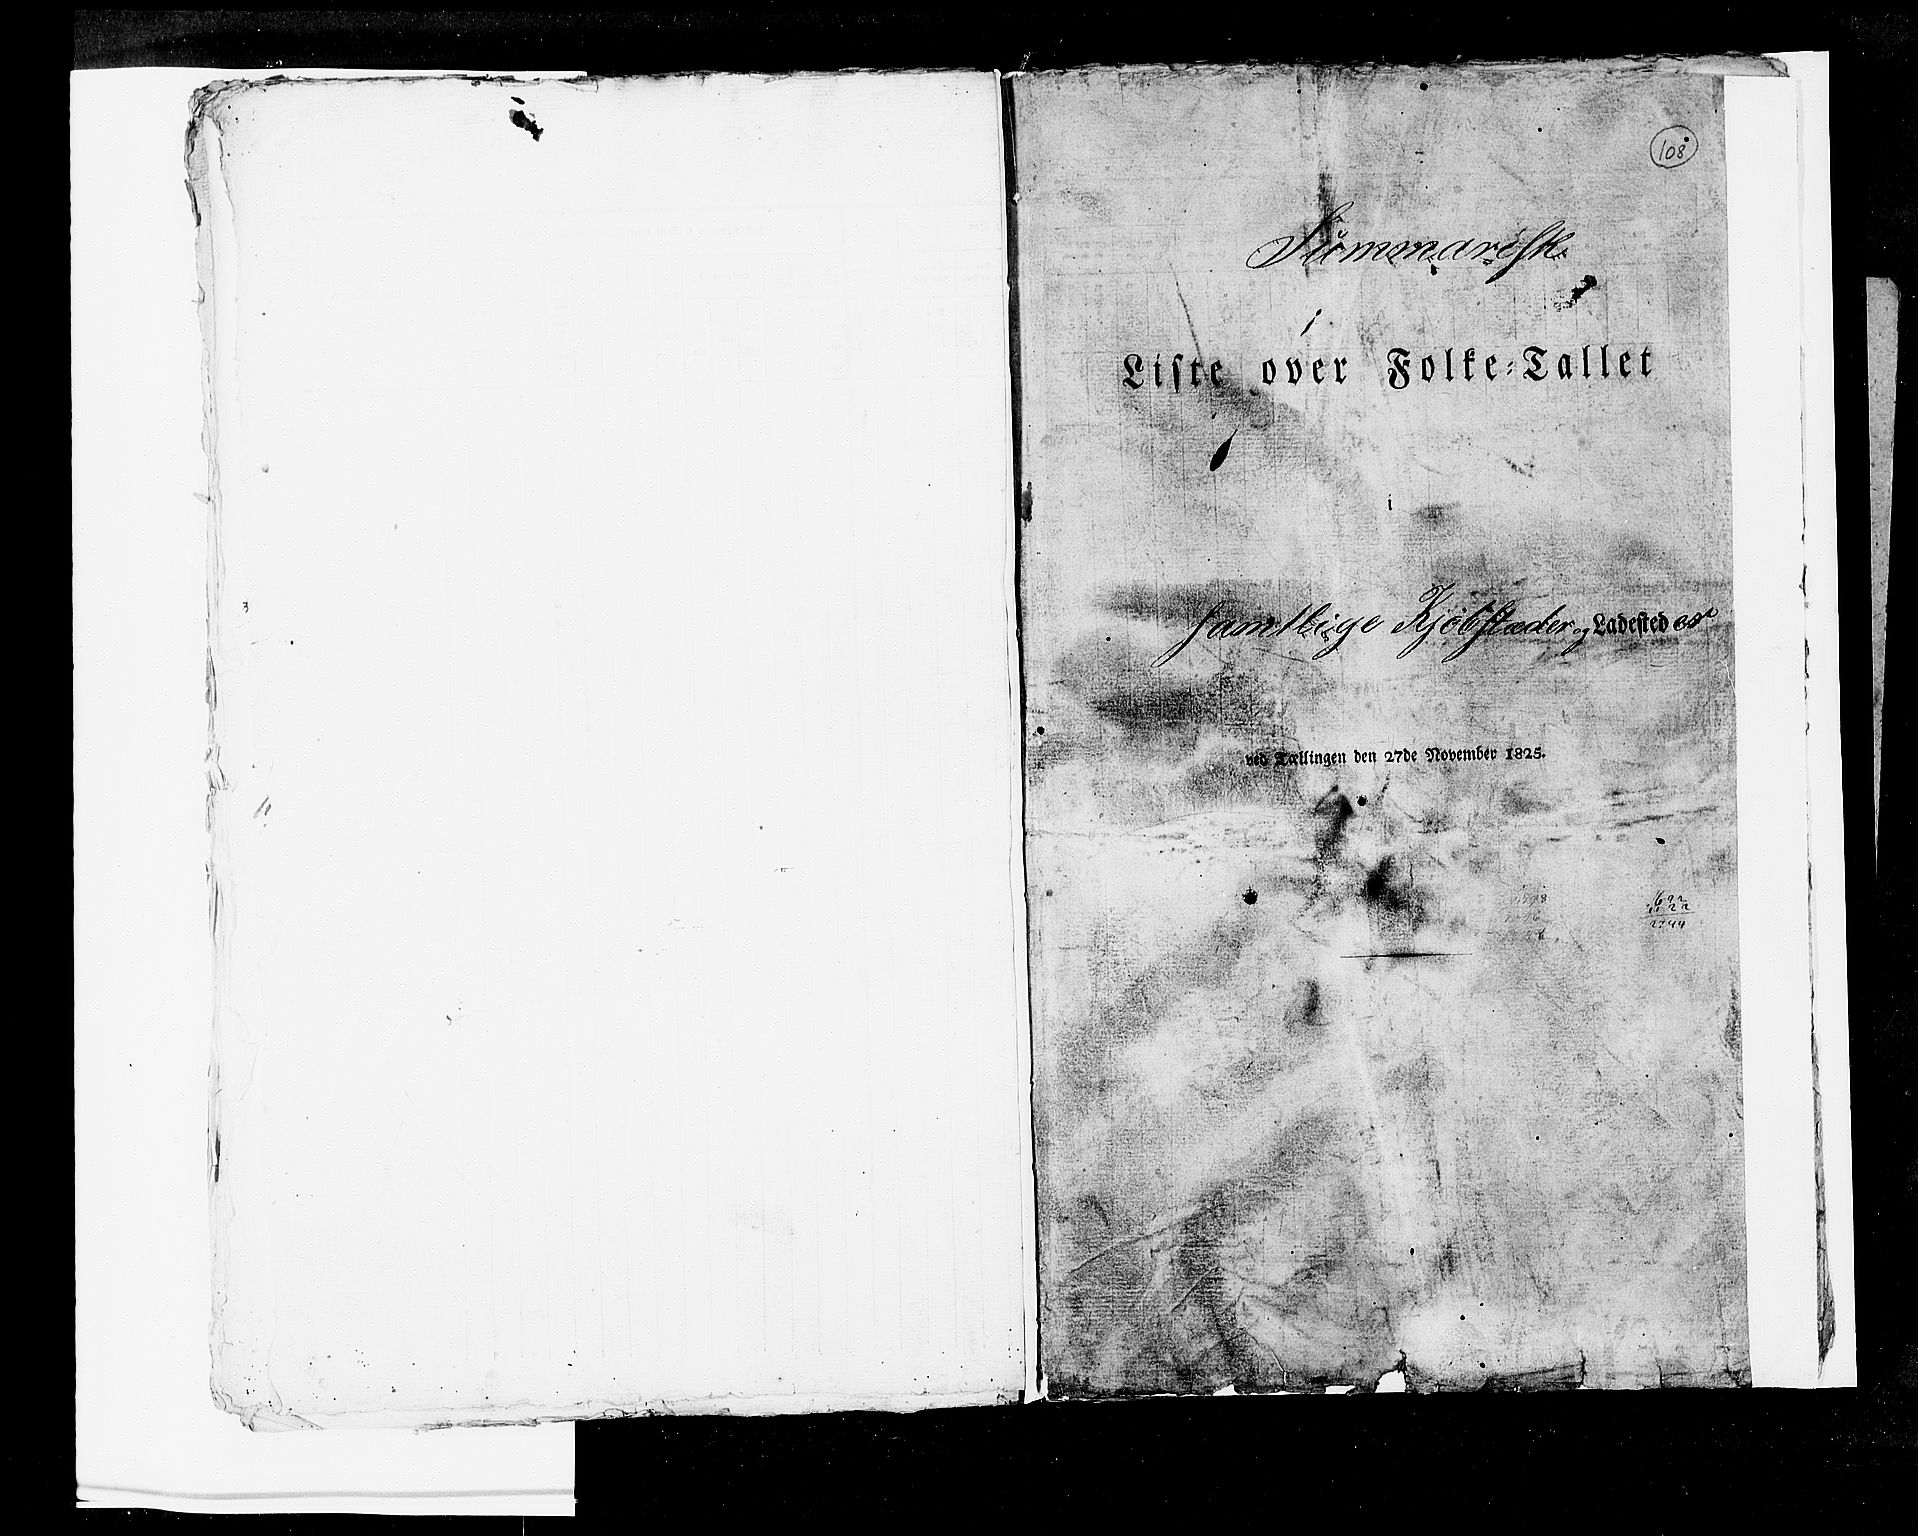 RA, Folketellingen 1825, bind 2: Hovedlister, 1825, s. 108